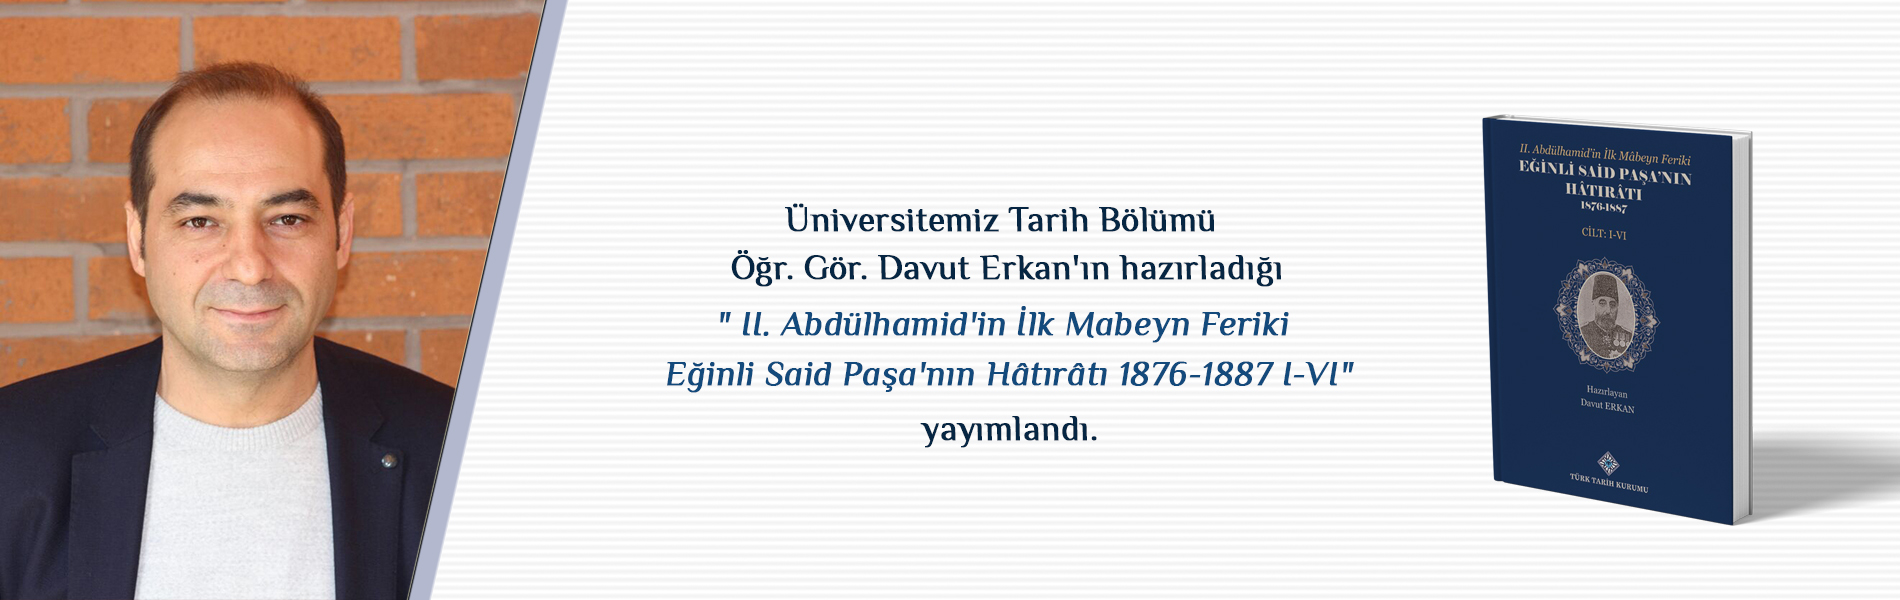 Üniversitemiz Tarih Bölümü Öğr. Gör. Davut Erkan'ın Hazırladığı "II. Abdülhamid'in İlk Mabeyn Feriki Eğinli Said Paşa'nın Hâtırâtı 1876-1887 I-VI" Yayımlandı